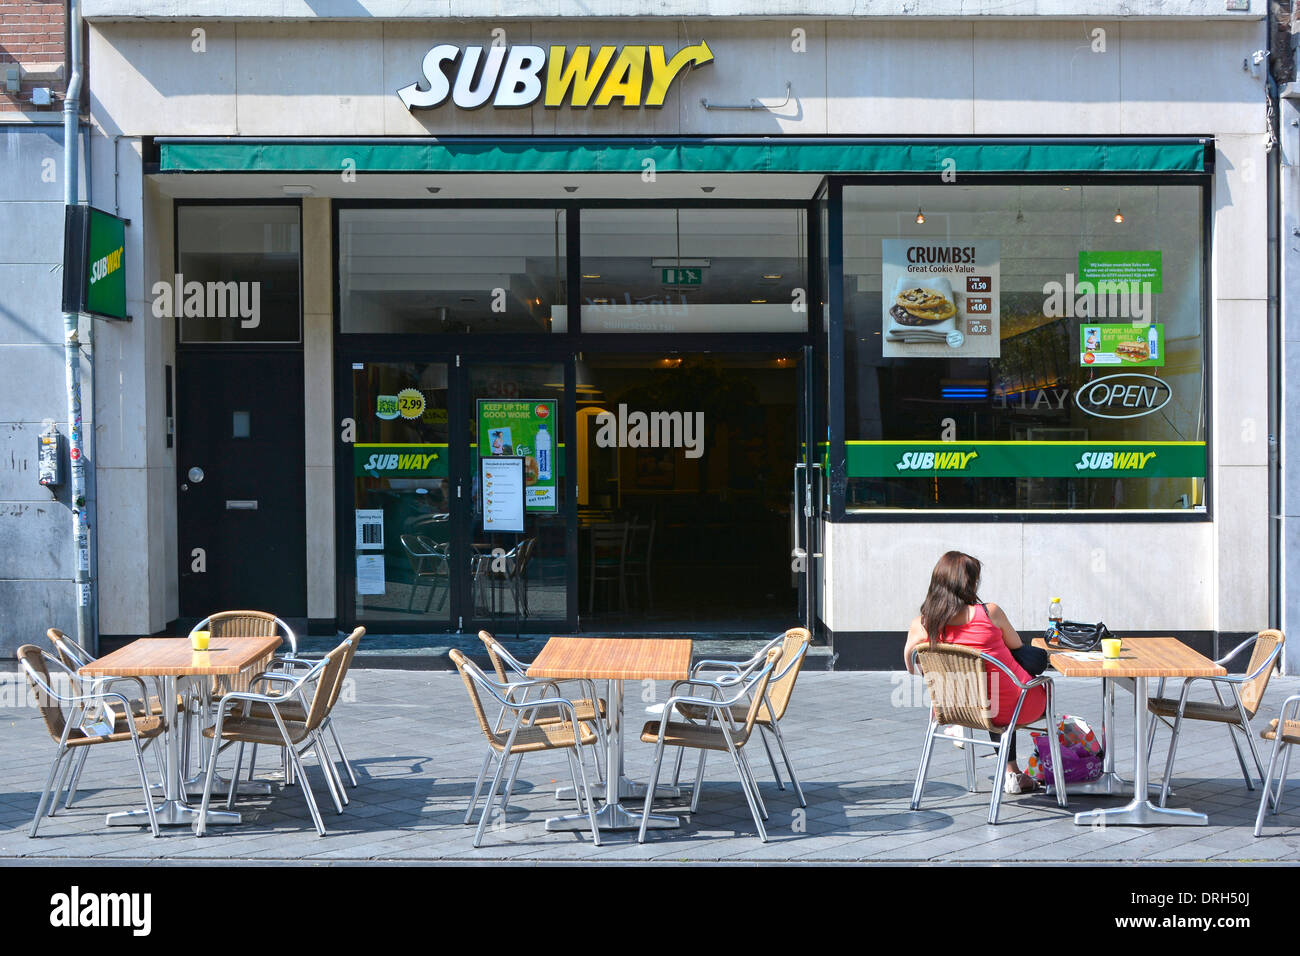 Maastricht City vue arrière femme assise à la table de trottoir en dehors d'une entreprise de sandwicherie Subway jour ensoleillé juillet été dans le Limbourg pays-Bas Europe Banque D'Images